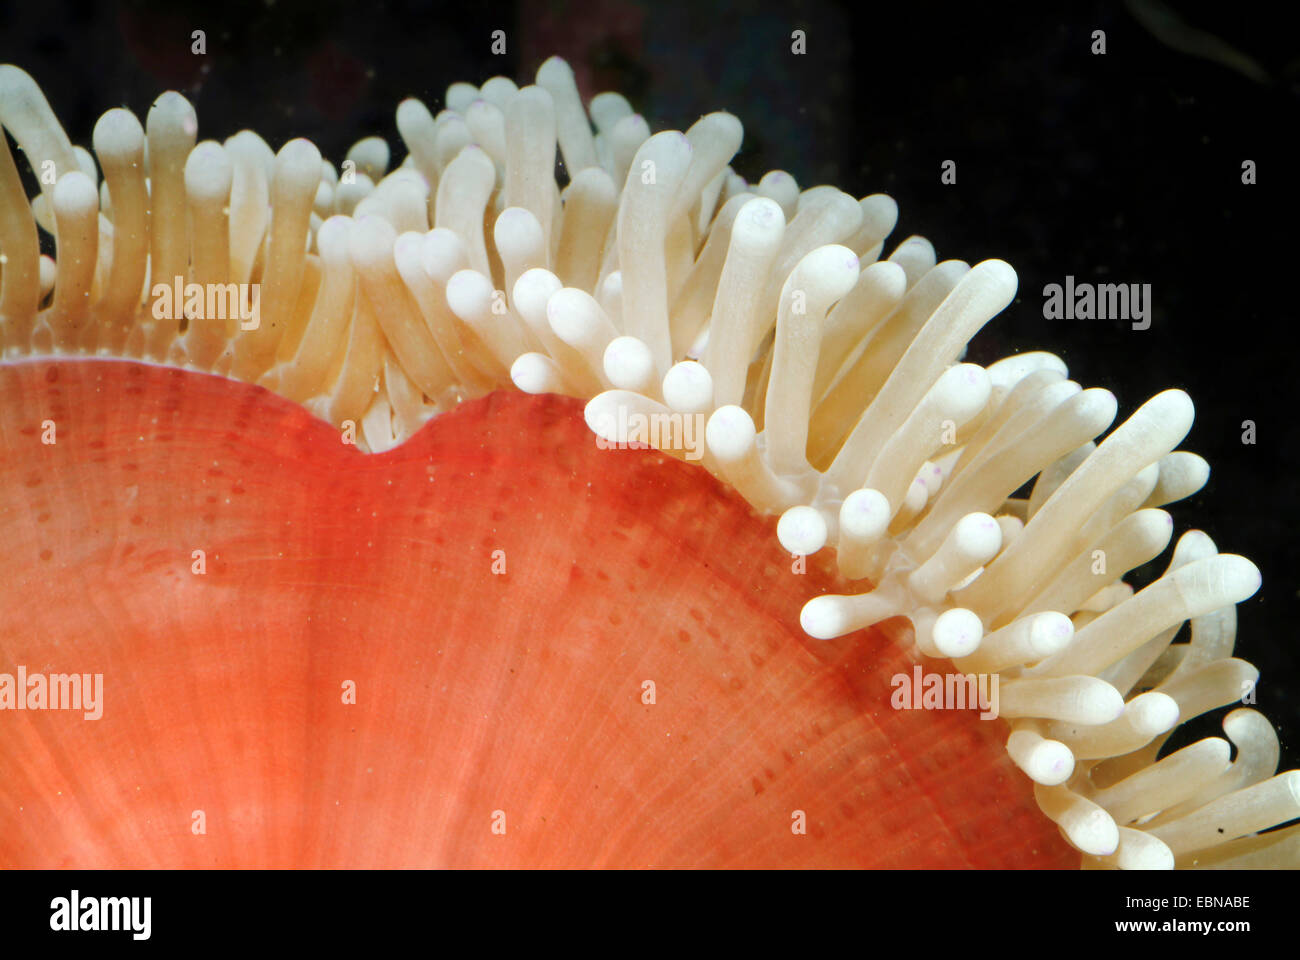 Magnifica anemone, magnifica anemone marittimo (Heteractis magnifica), il dettaglio di una magnifica anemone Foto Stock